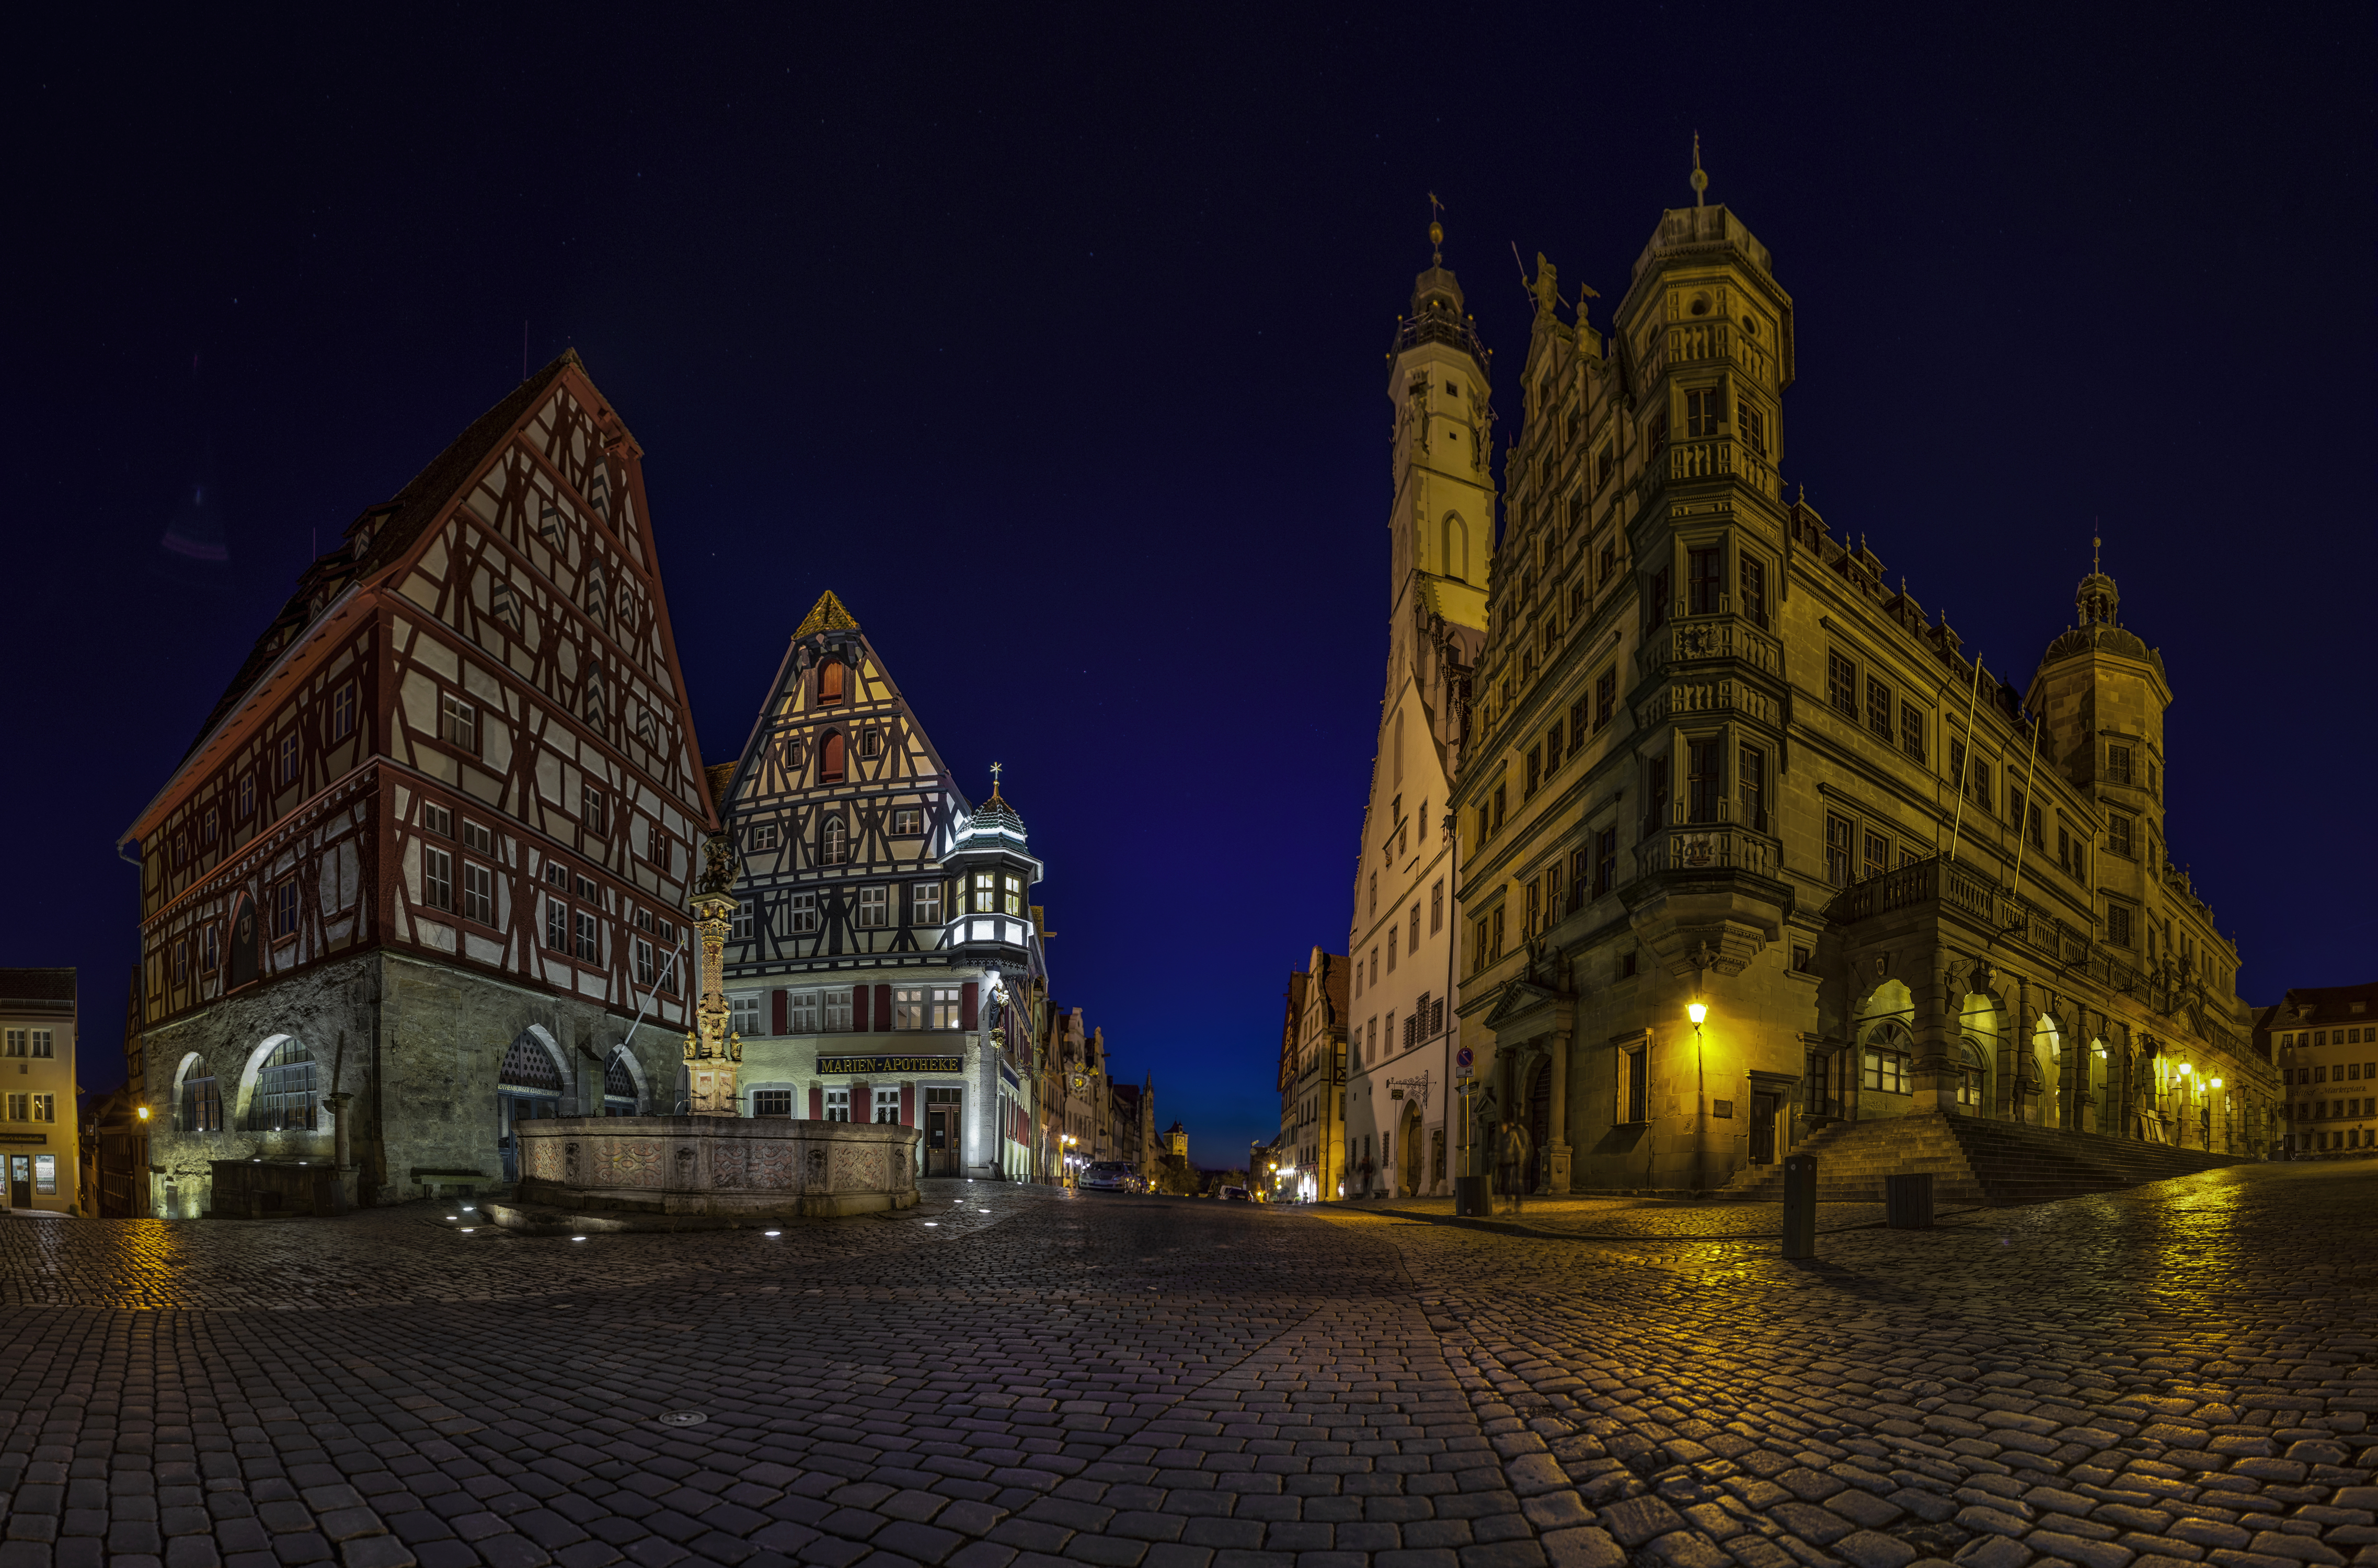 Германия города. Ротенбург-на-Таубере. Ночная Германия  Бавария. Ночные улочки в Германии. Готические соборы Германии.